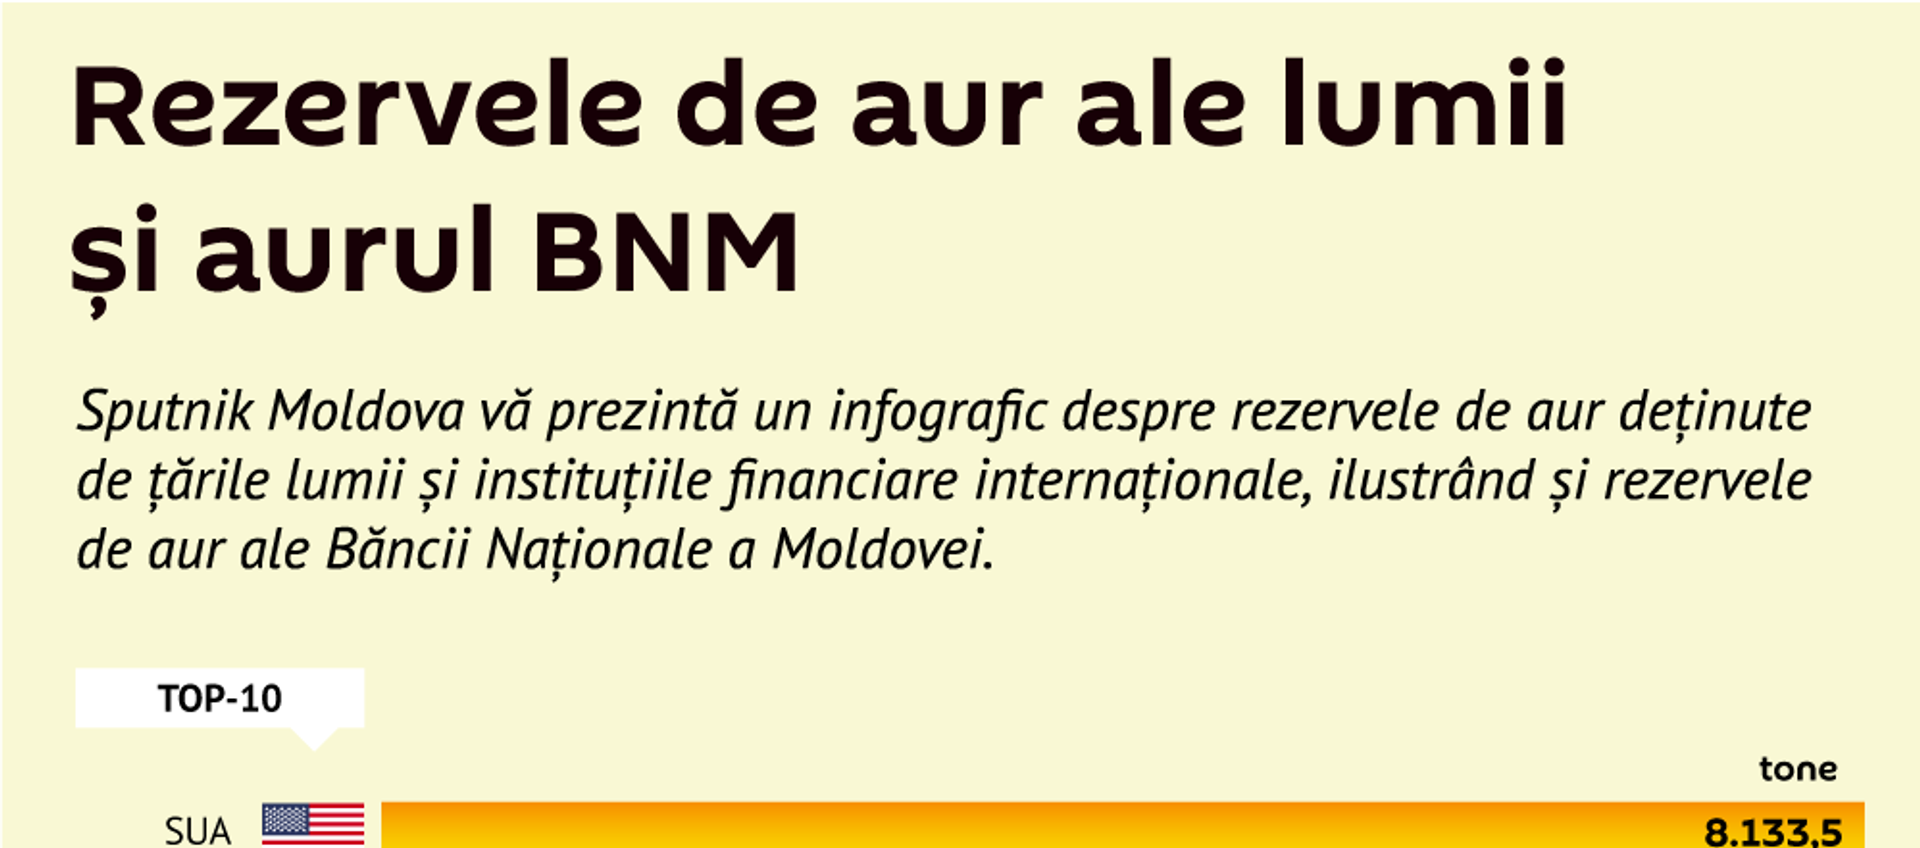 Rezervele de aur ale lumii și aurul BNM  - Sputnik Moldova, 1920, 03.09.2019